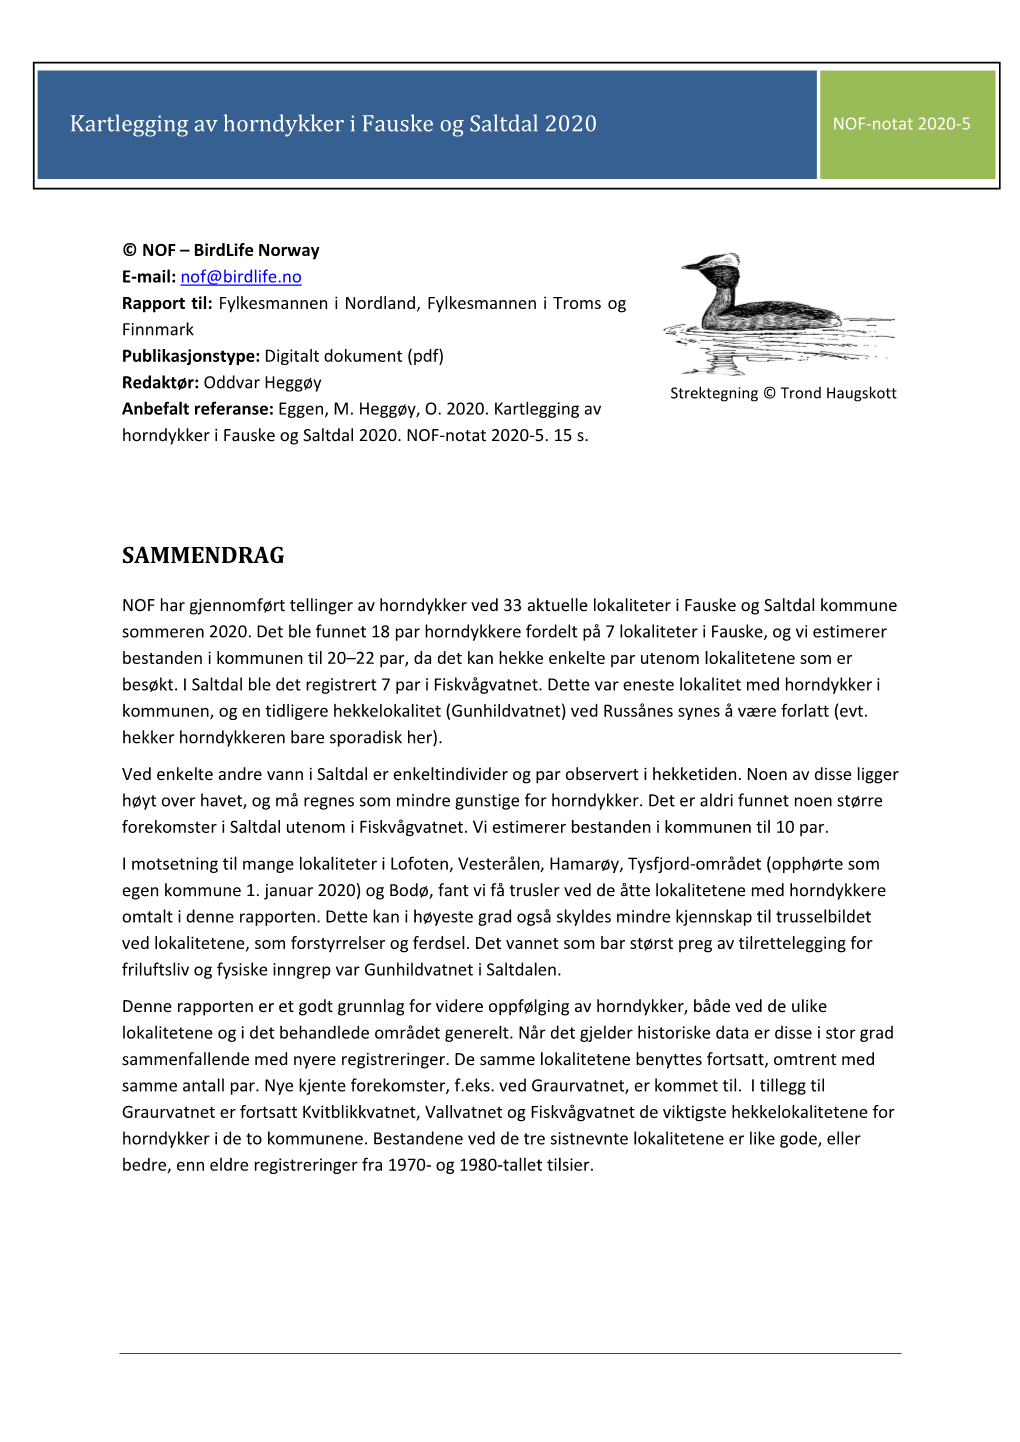 Horndykker I Fauske Og Saltdal 2020 NOF-Notat 2020-5